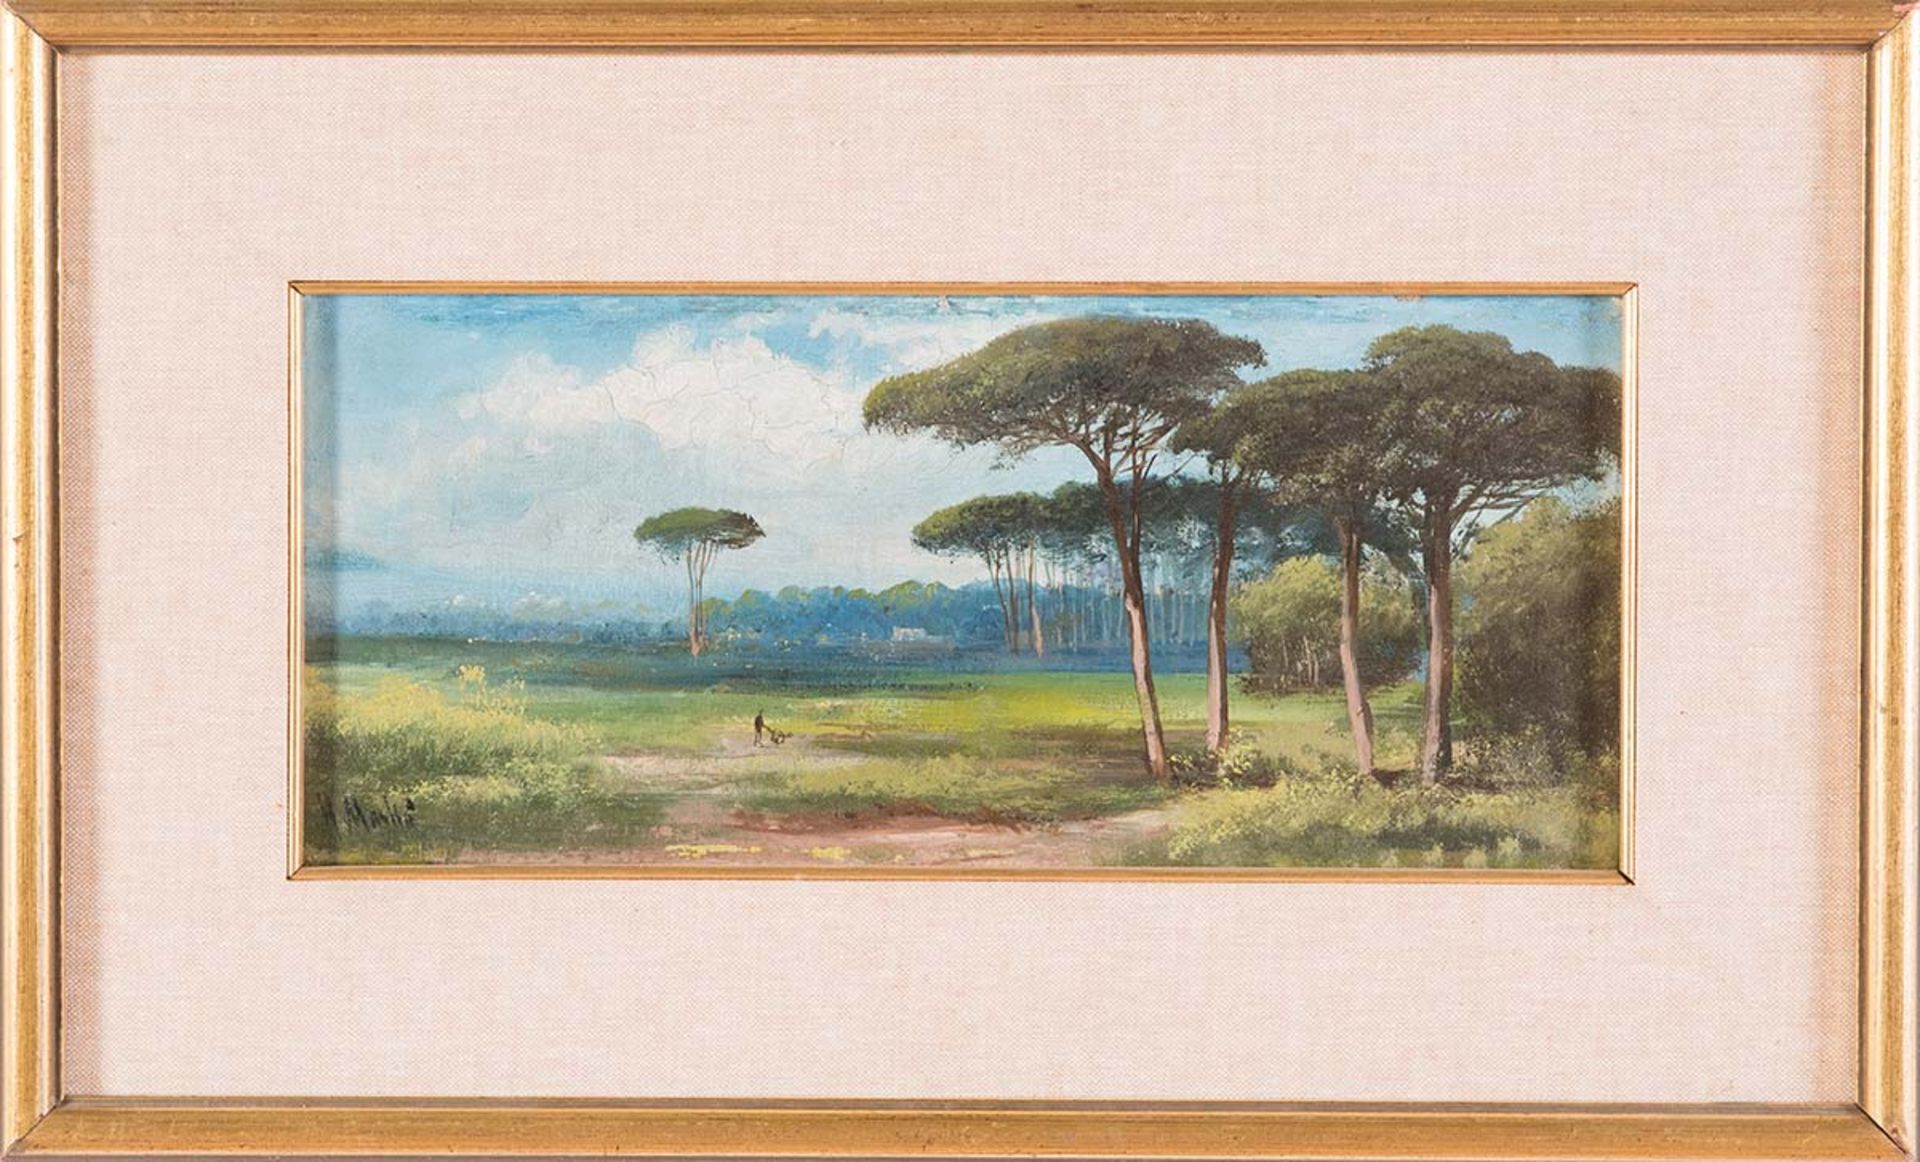 Henry Markò (Firenze 1855 - Lavagna 1921), attribuito a, “Paesaggio”.